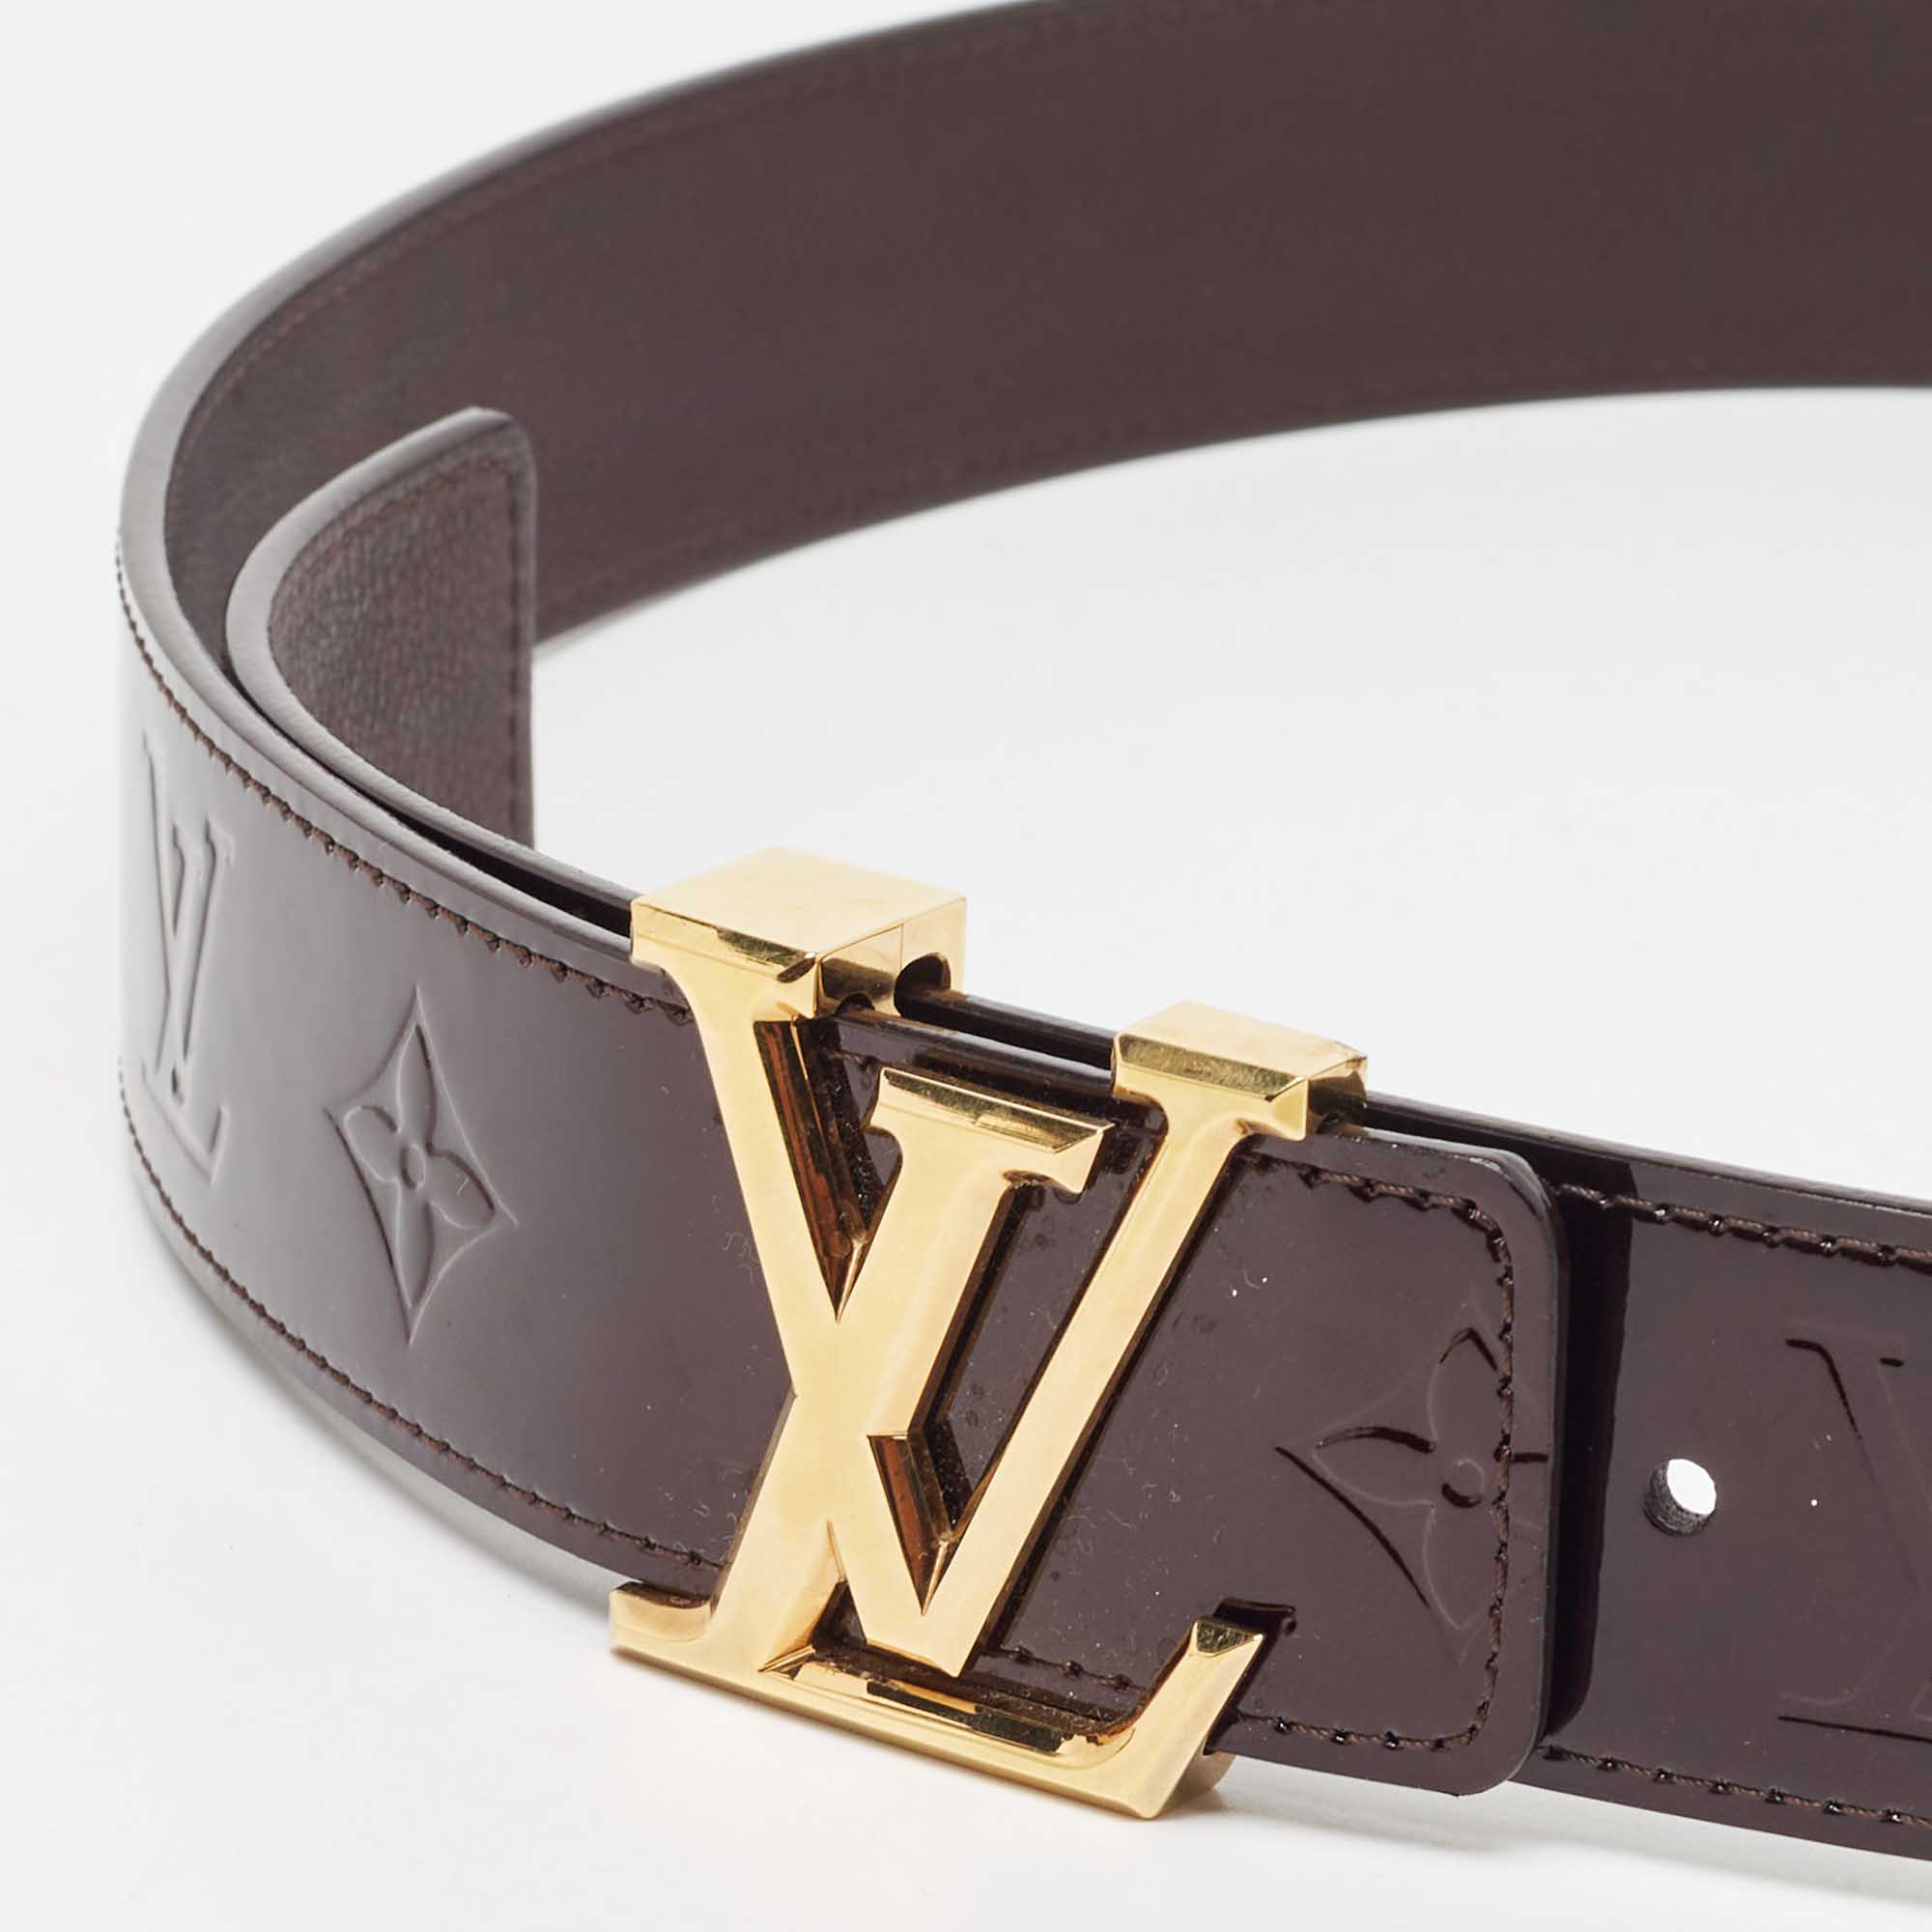 Louis Vuitton Amarante Vernis Leather LV Initiales Waist Belt 90 CM